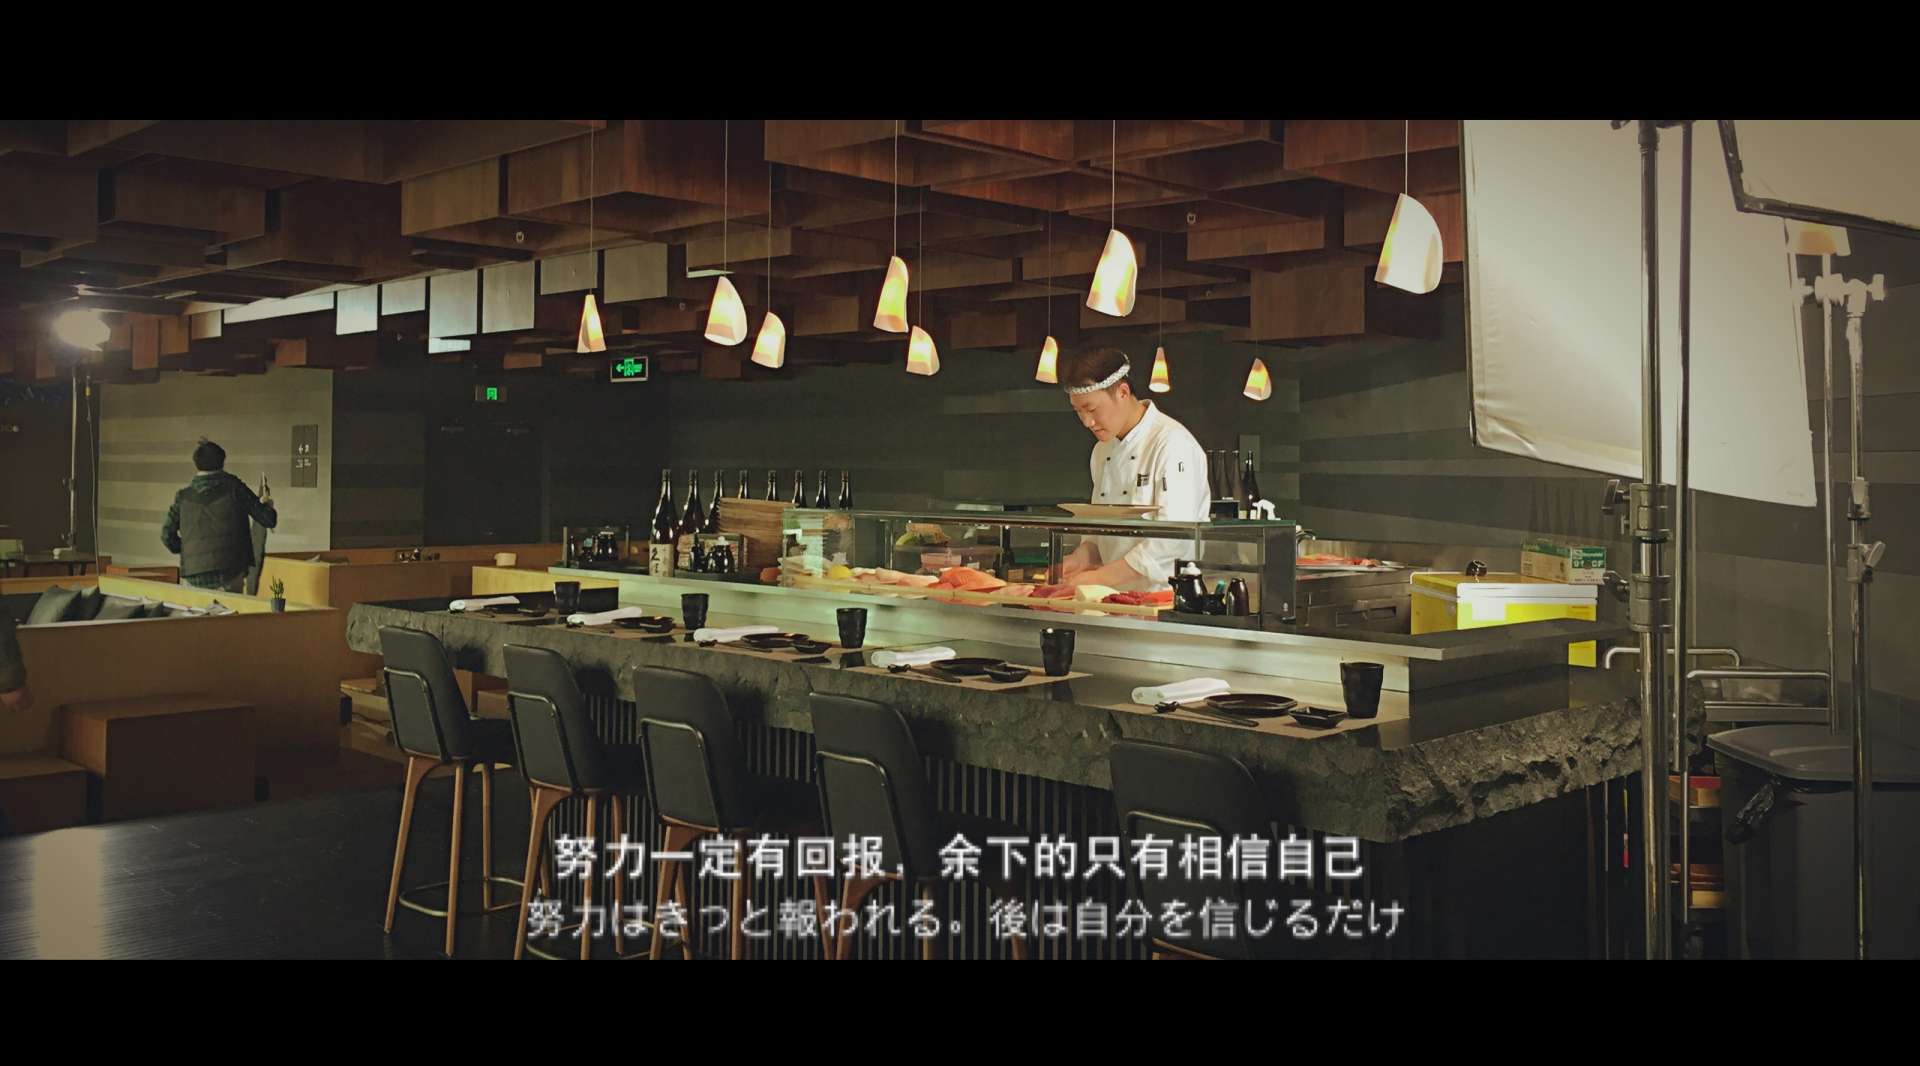 河南电视台都市频道《食客准备着》宣传片DEMO